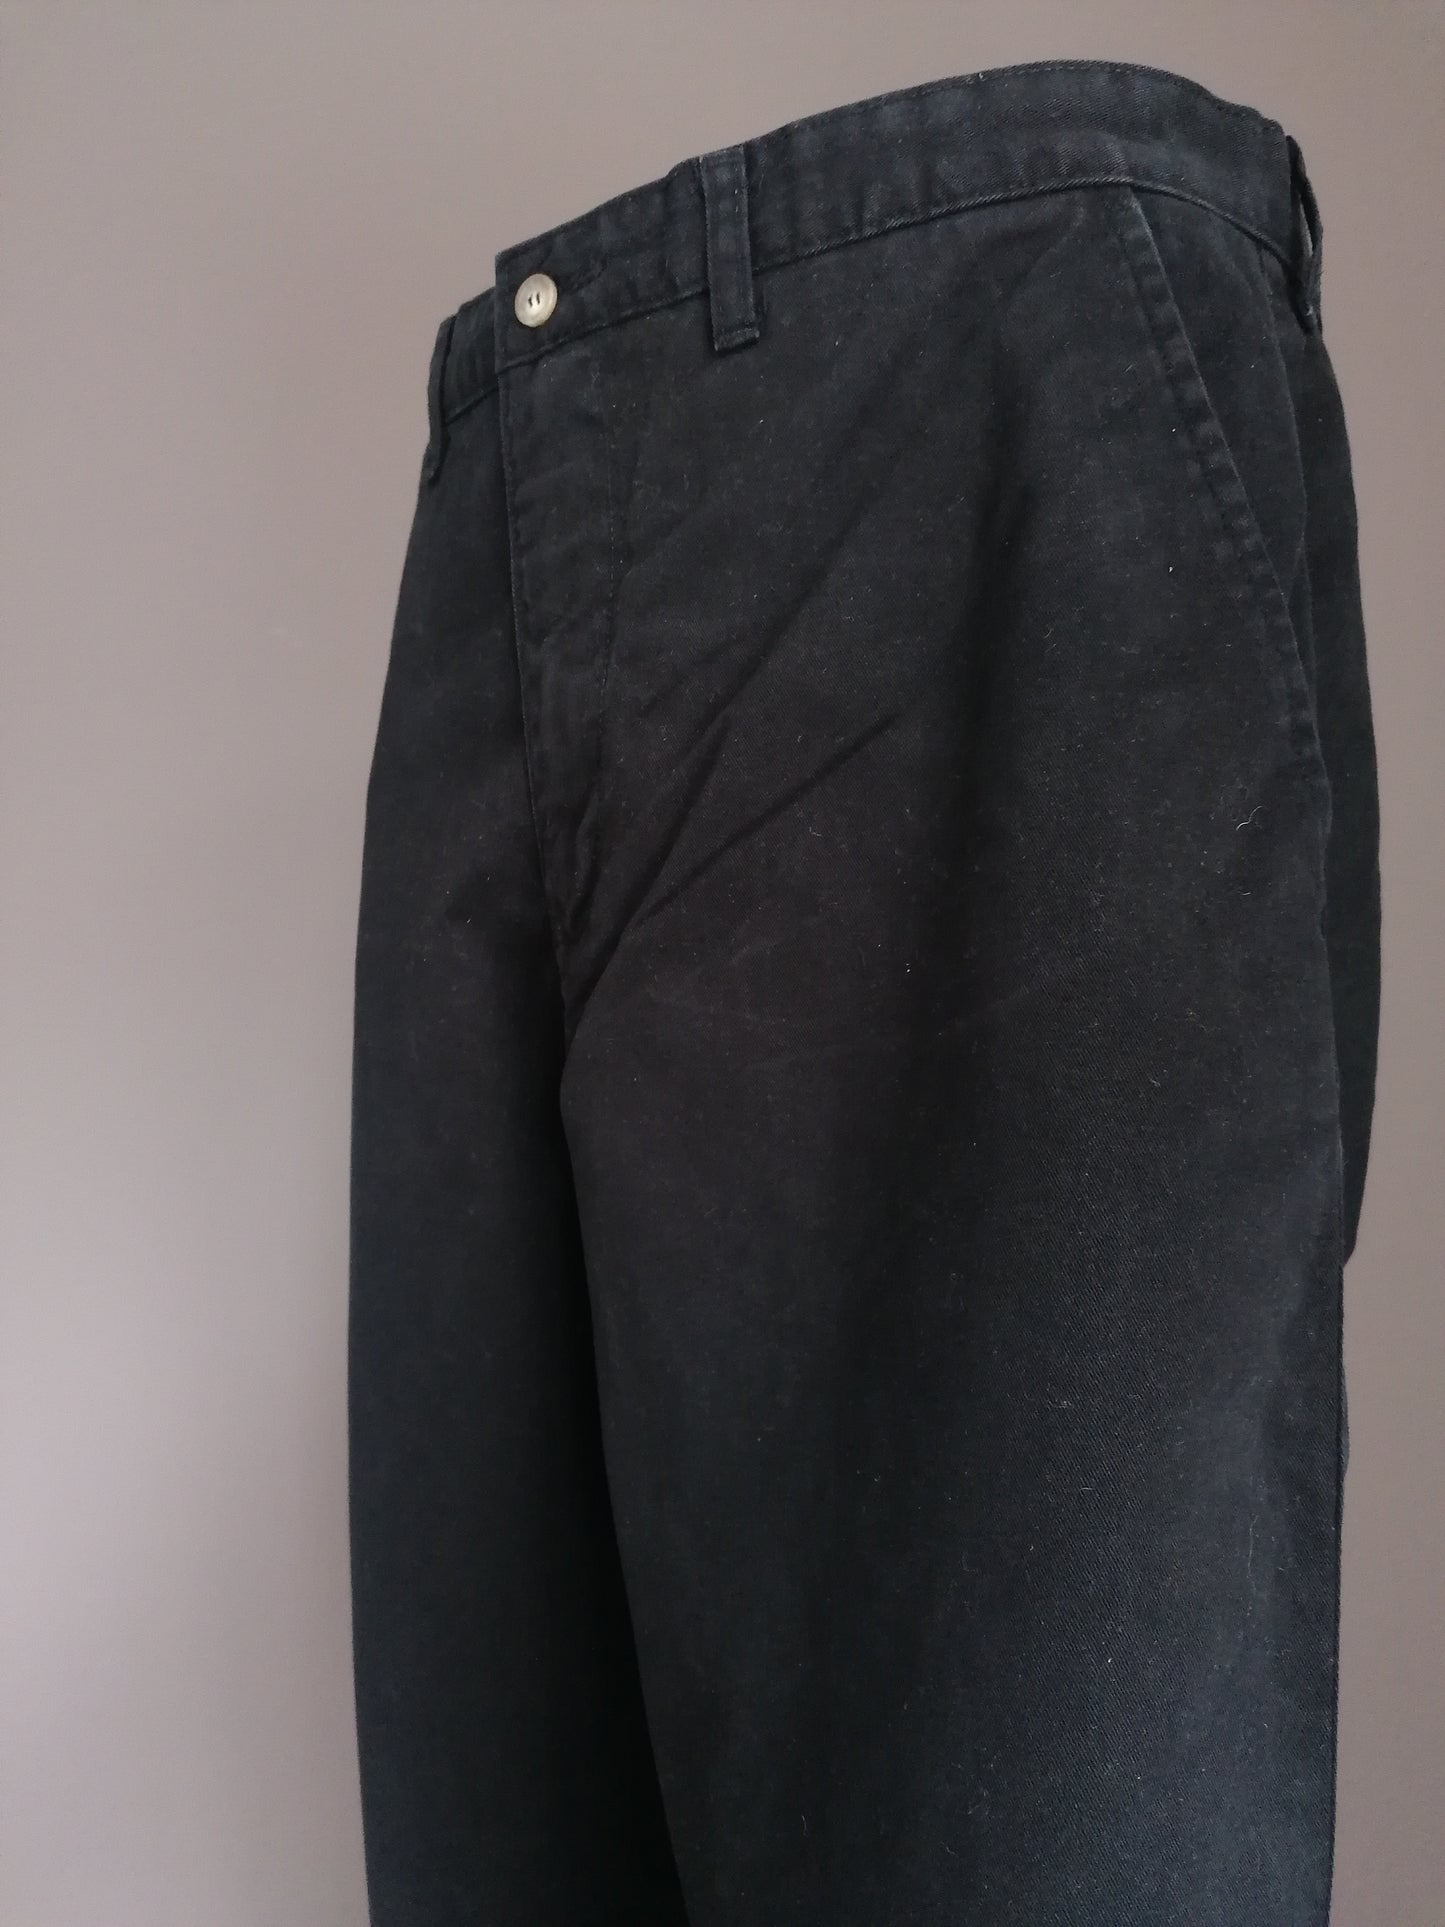 Jeans maverick. Colore nero. Taglia W36 - L32. A vita alta!!